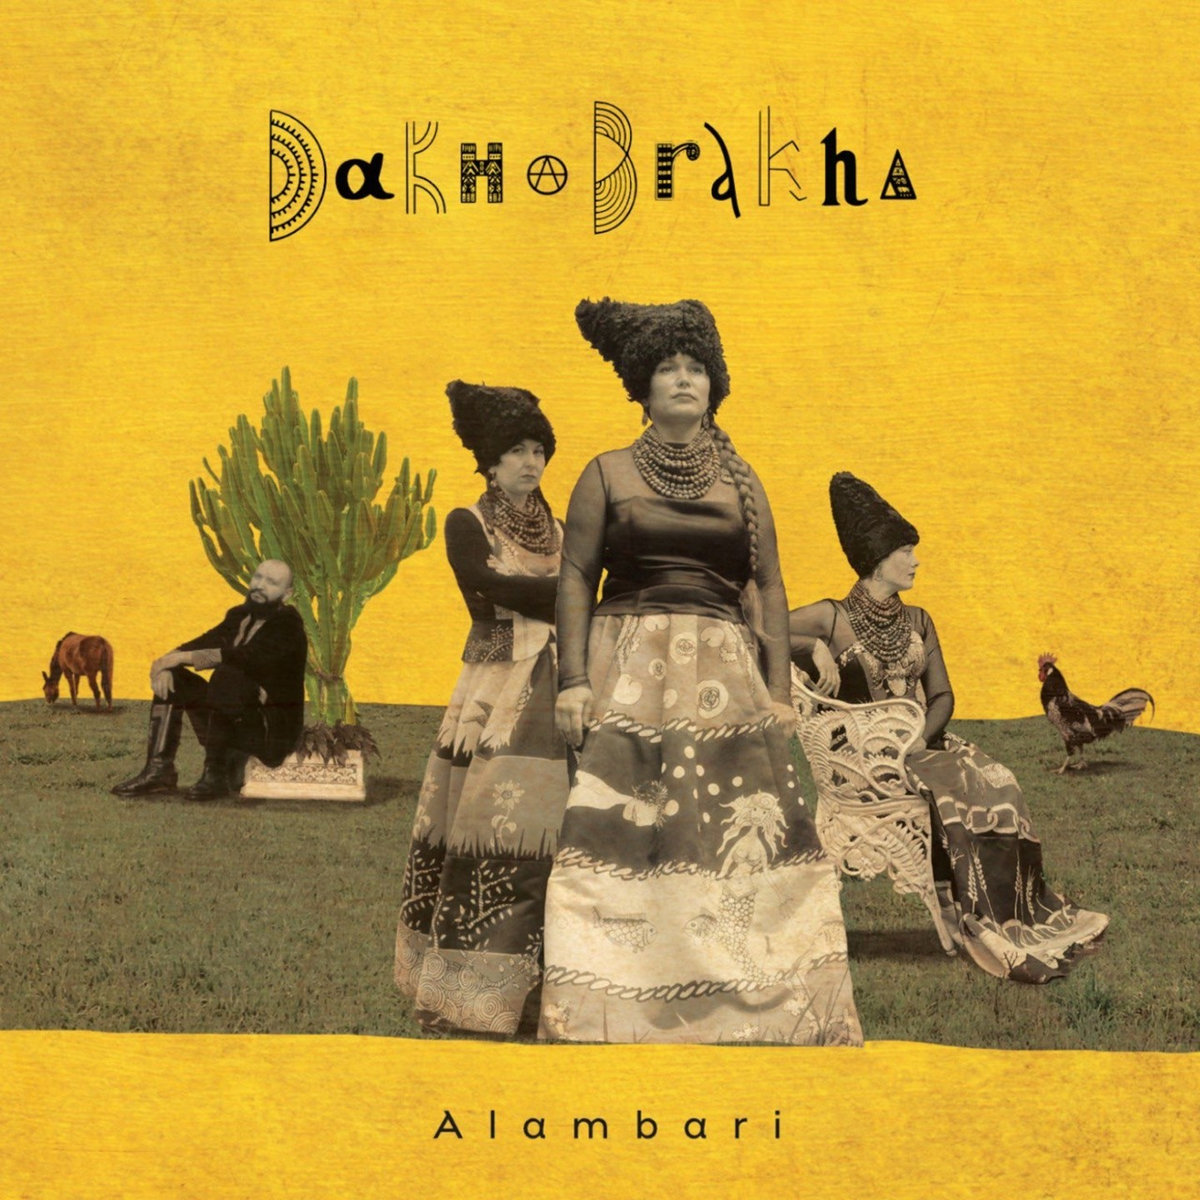 ДахаБраха - Alambari (2020)